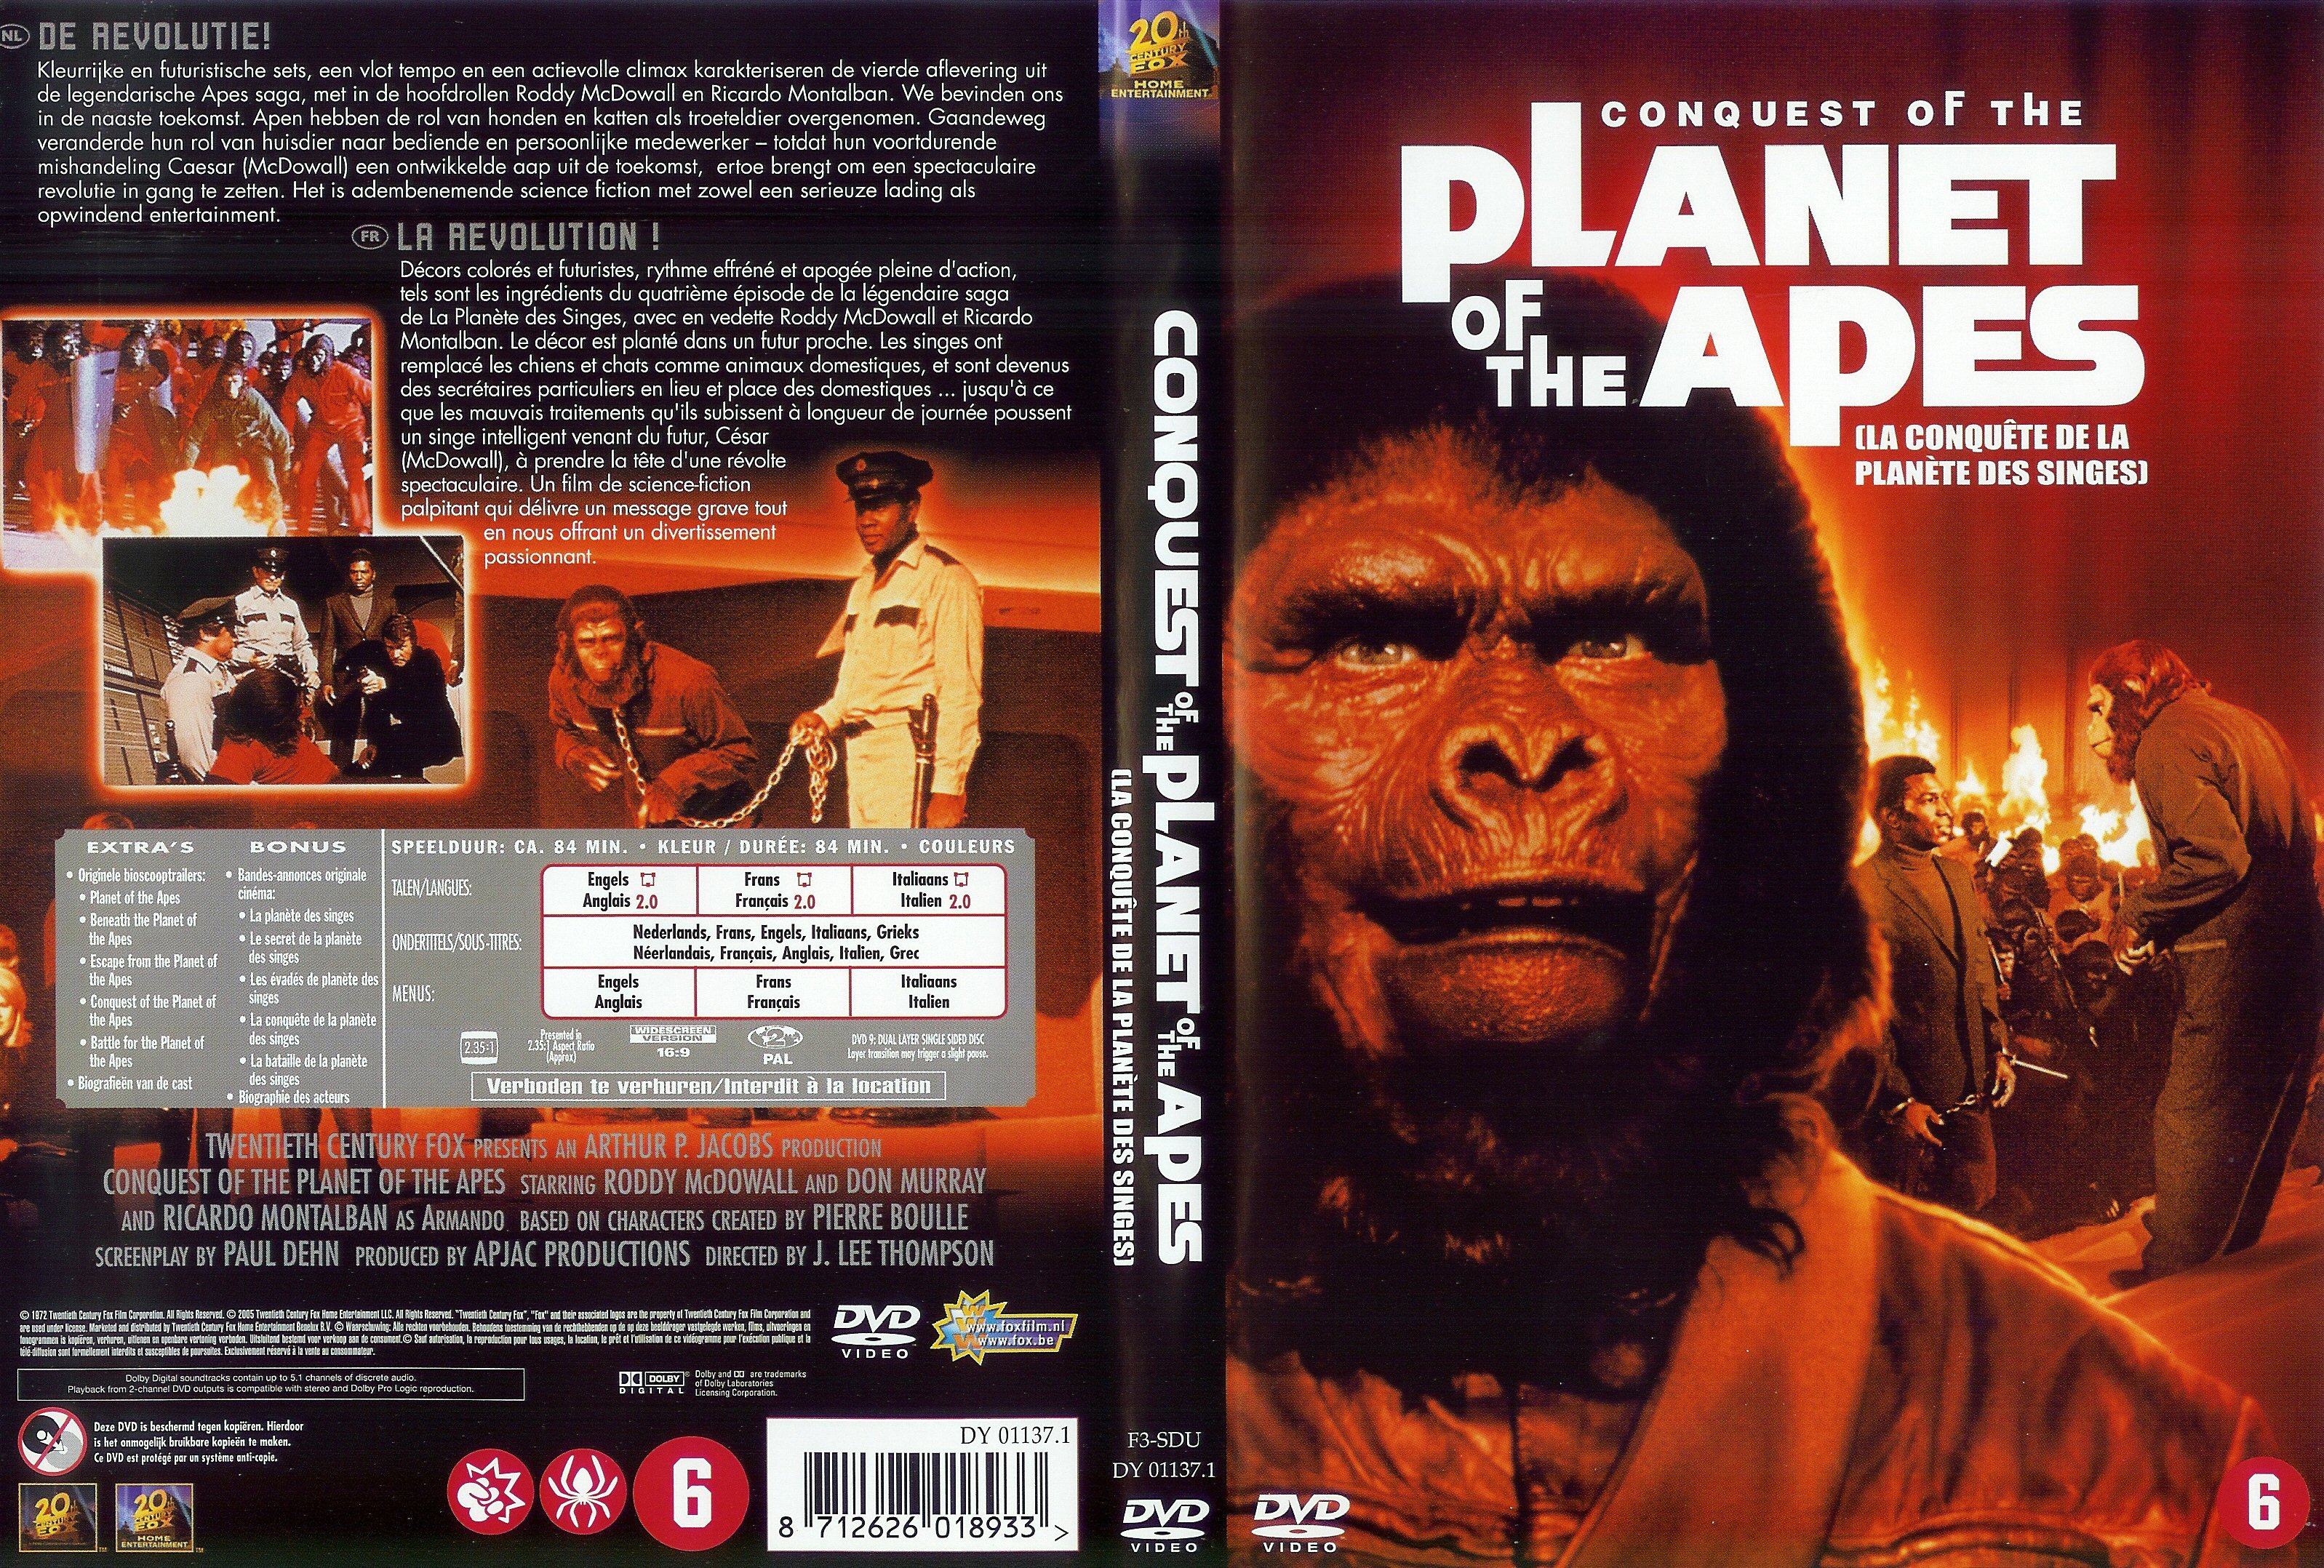 Jaquette DVD La conquete de la planete des singes